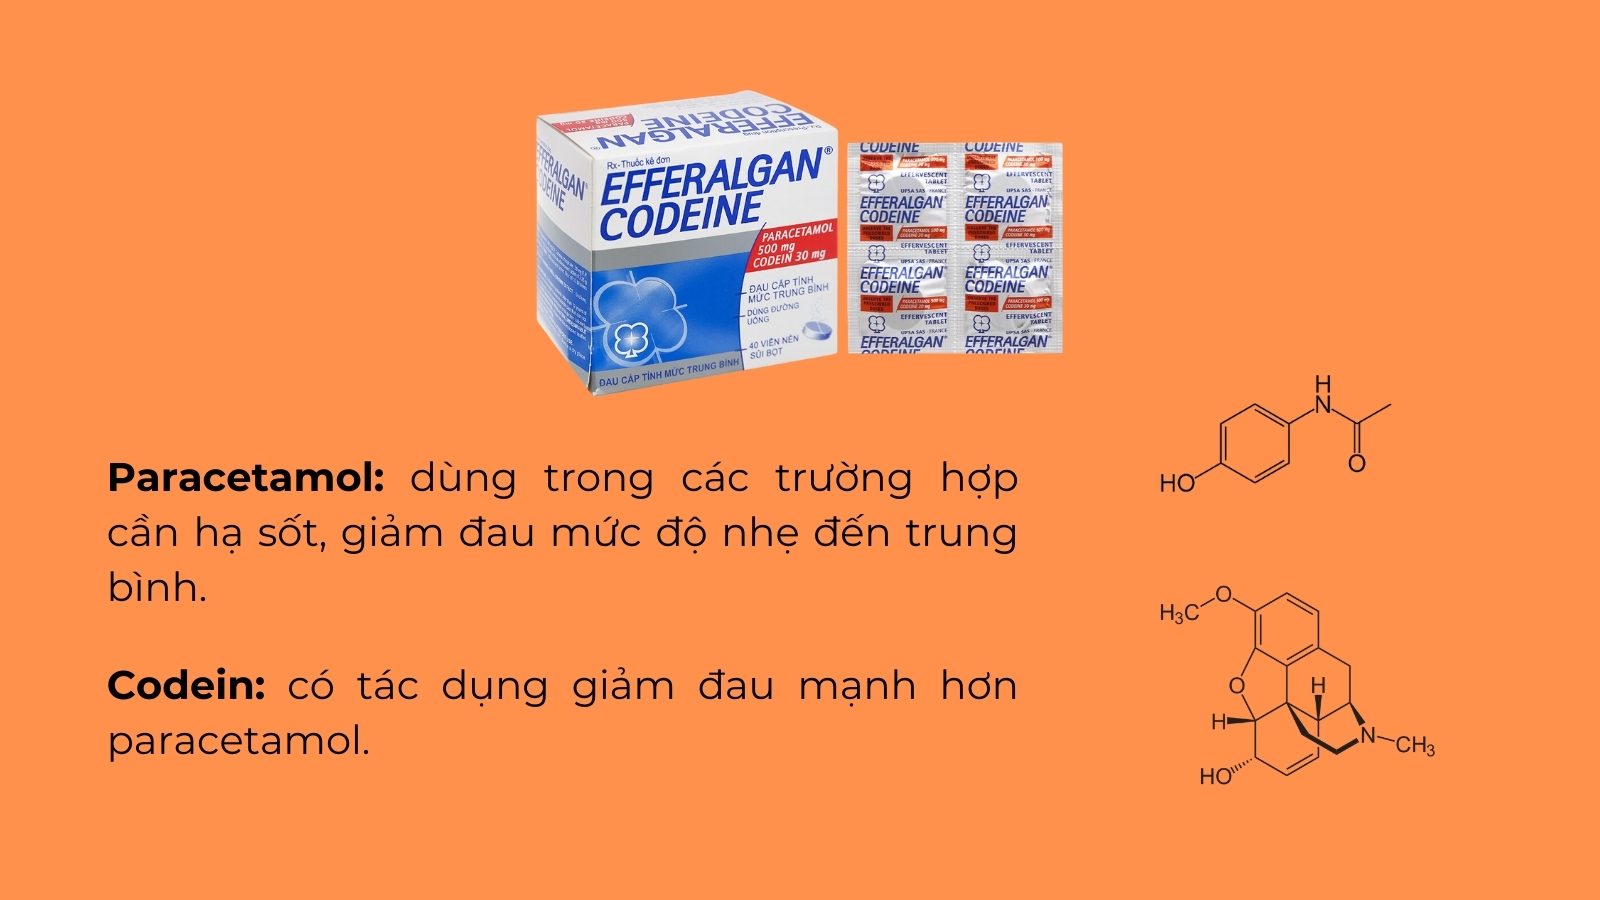 Thuốc Efferalgan Codeine có công dụng giảm đau, hạ sốt